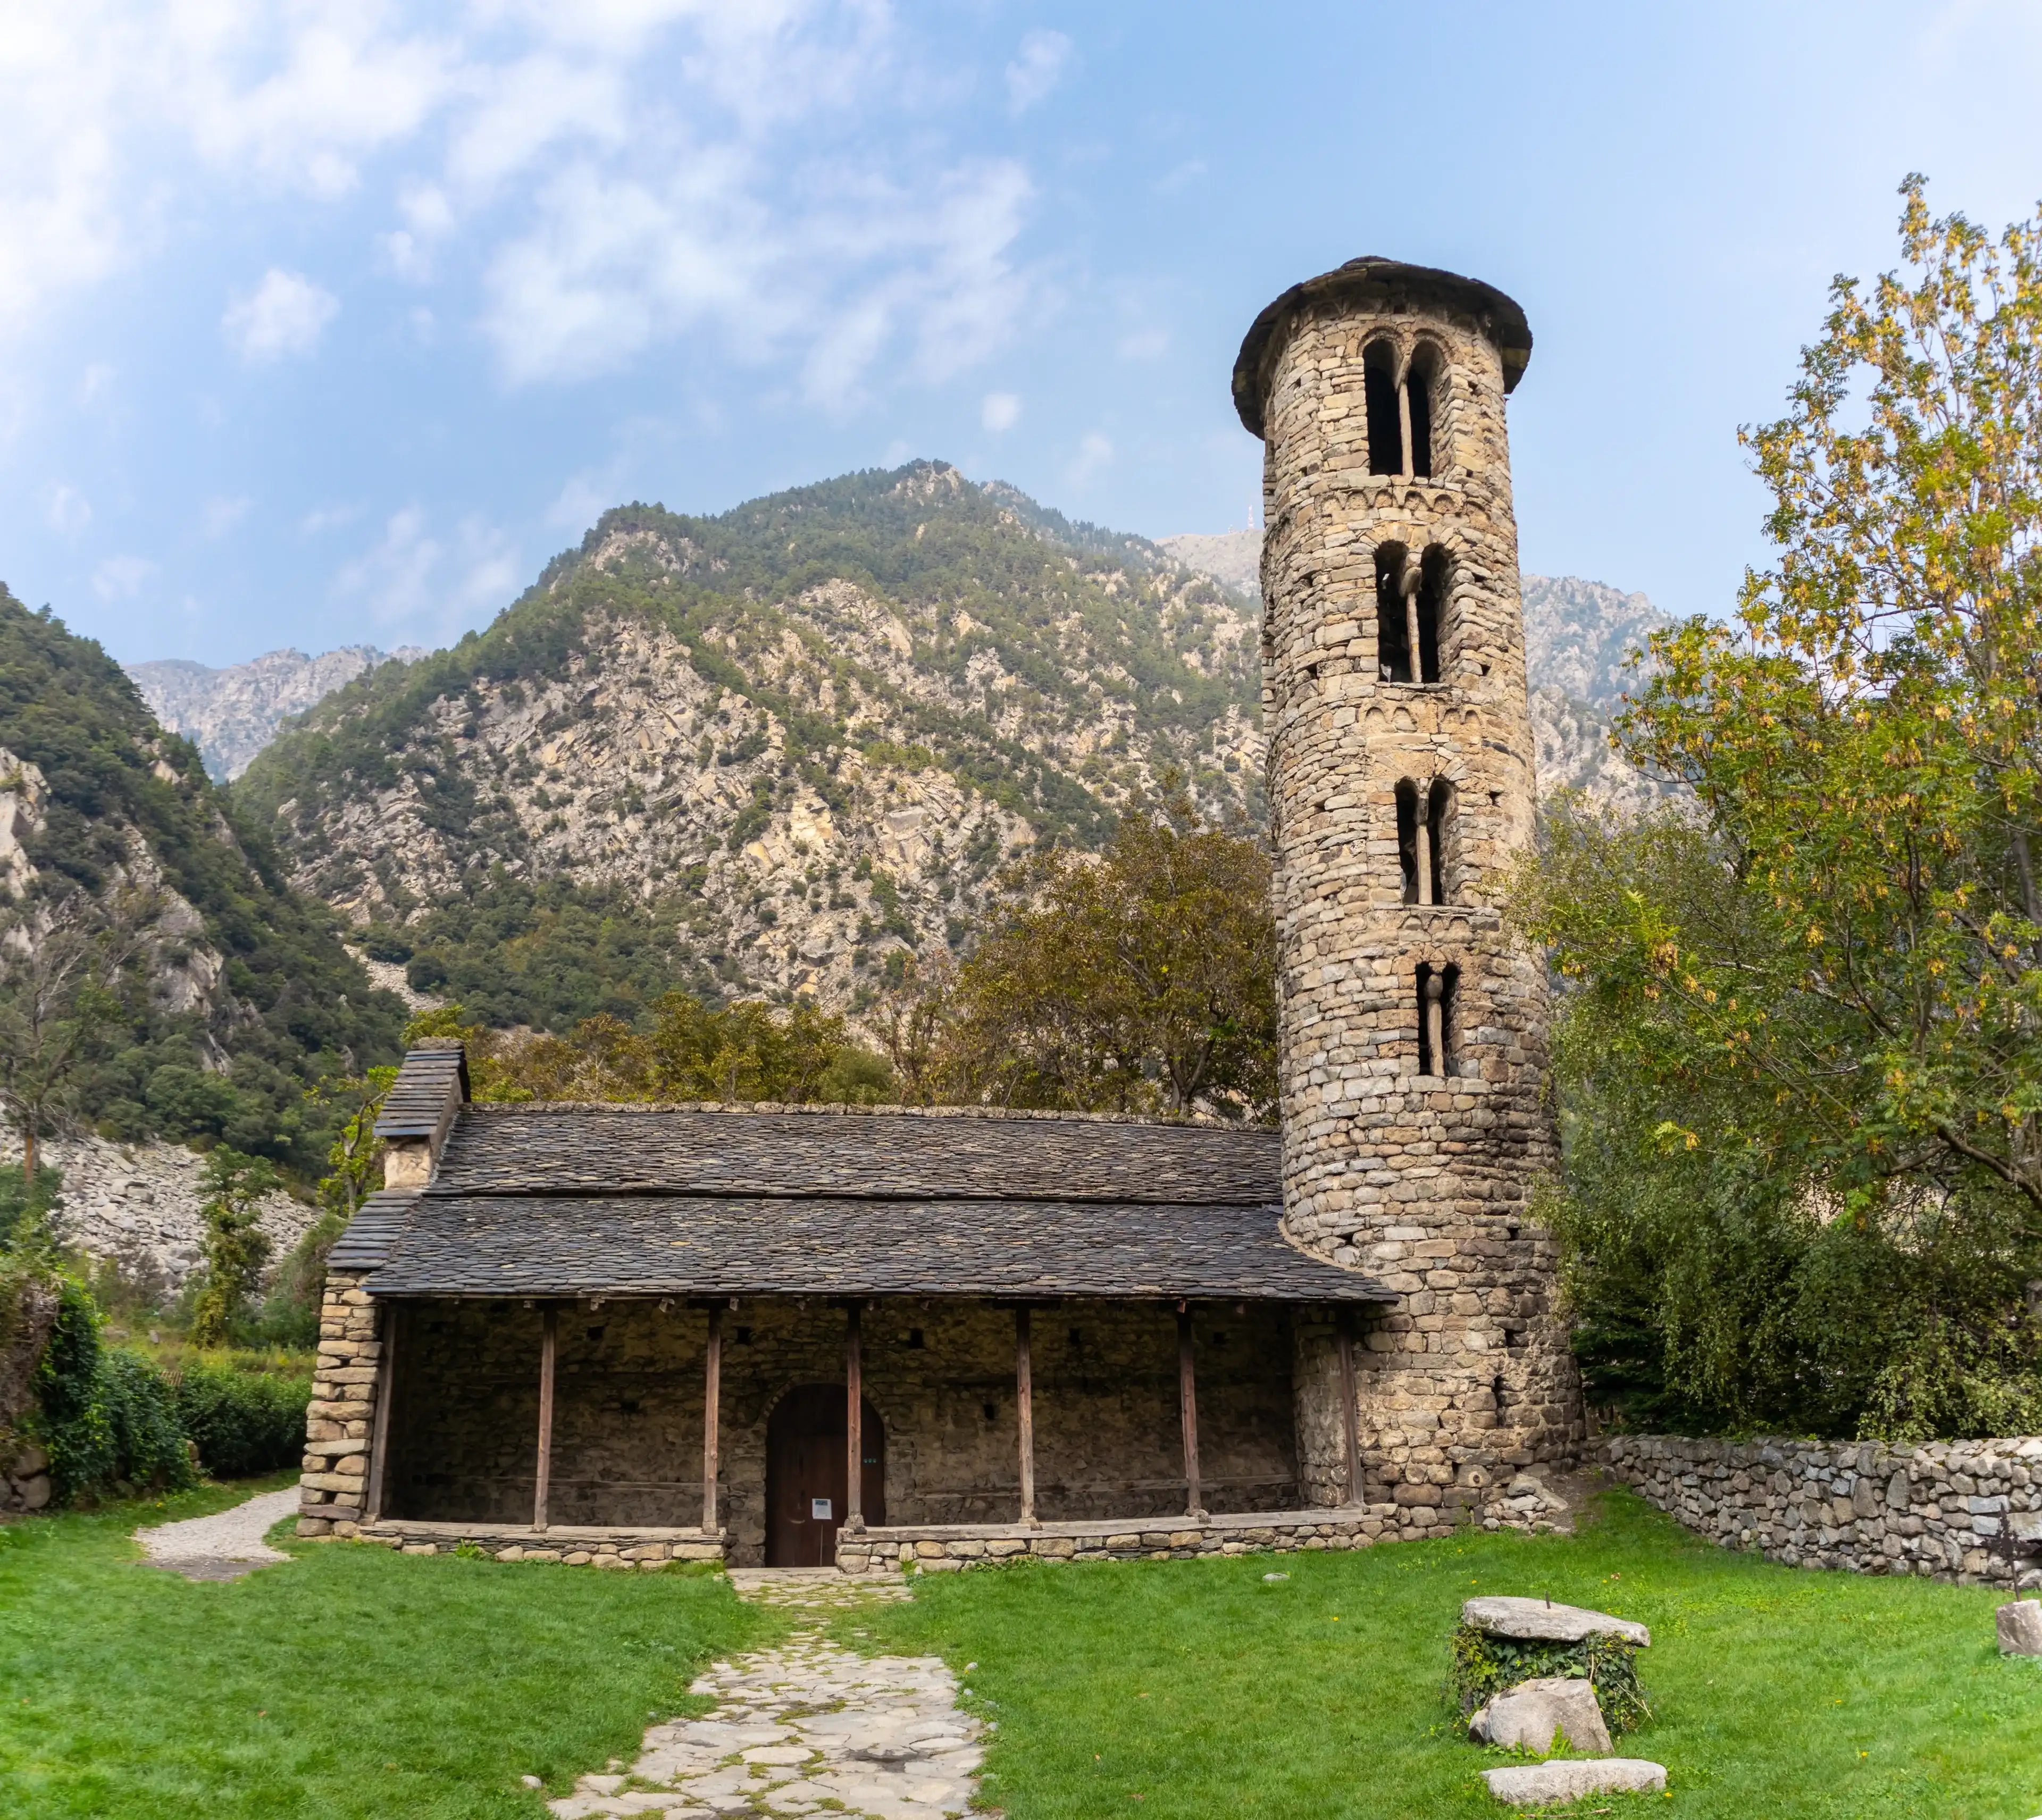 Església de Santa Coloma, Andorra's oldest church, romanesque style, frontal facade